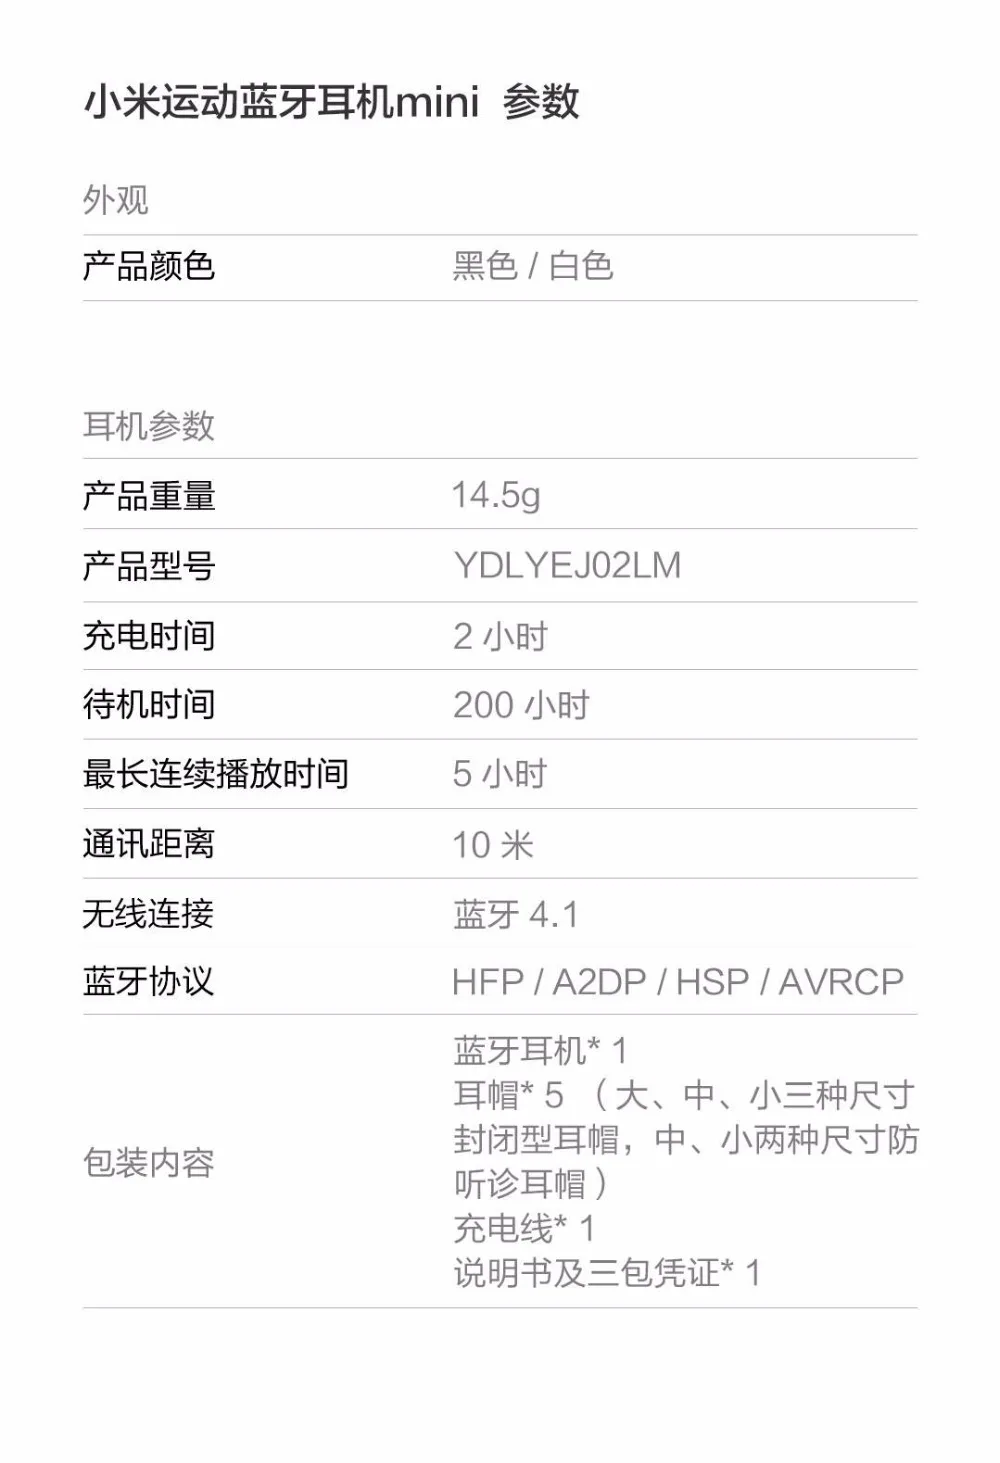 Оригинальная Xiaomi mi Спортивная bluetooth-гарнитура, беспроводные наушники mi ni Bluetooth 4,1, музыкальные/спортивные наушники mi c IPX4, водонепроницаемые